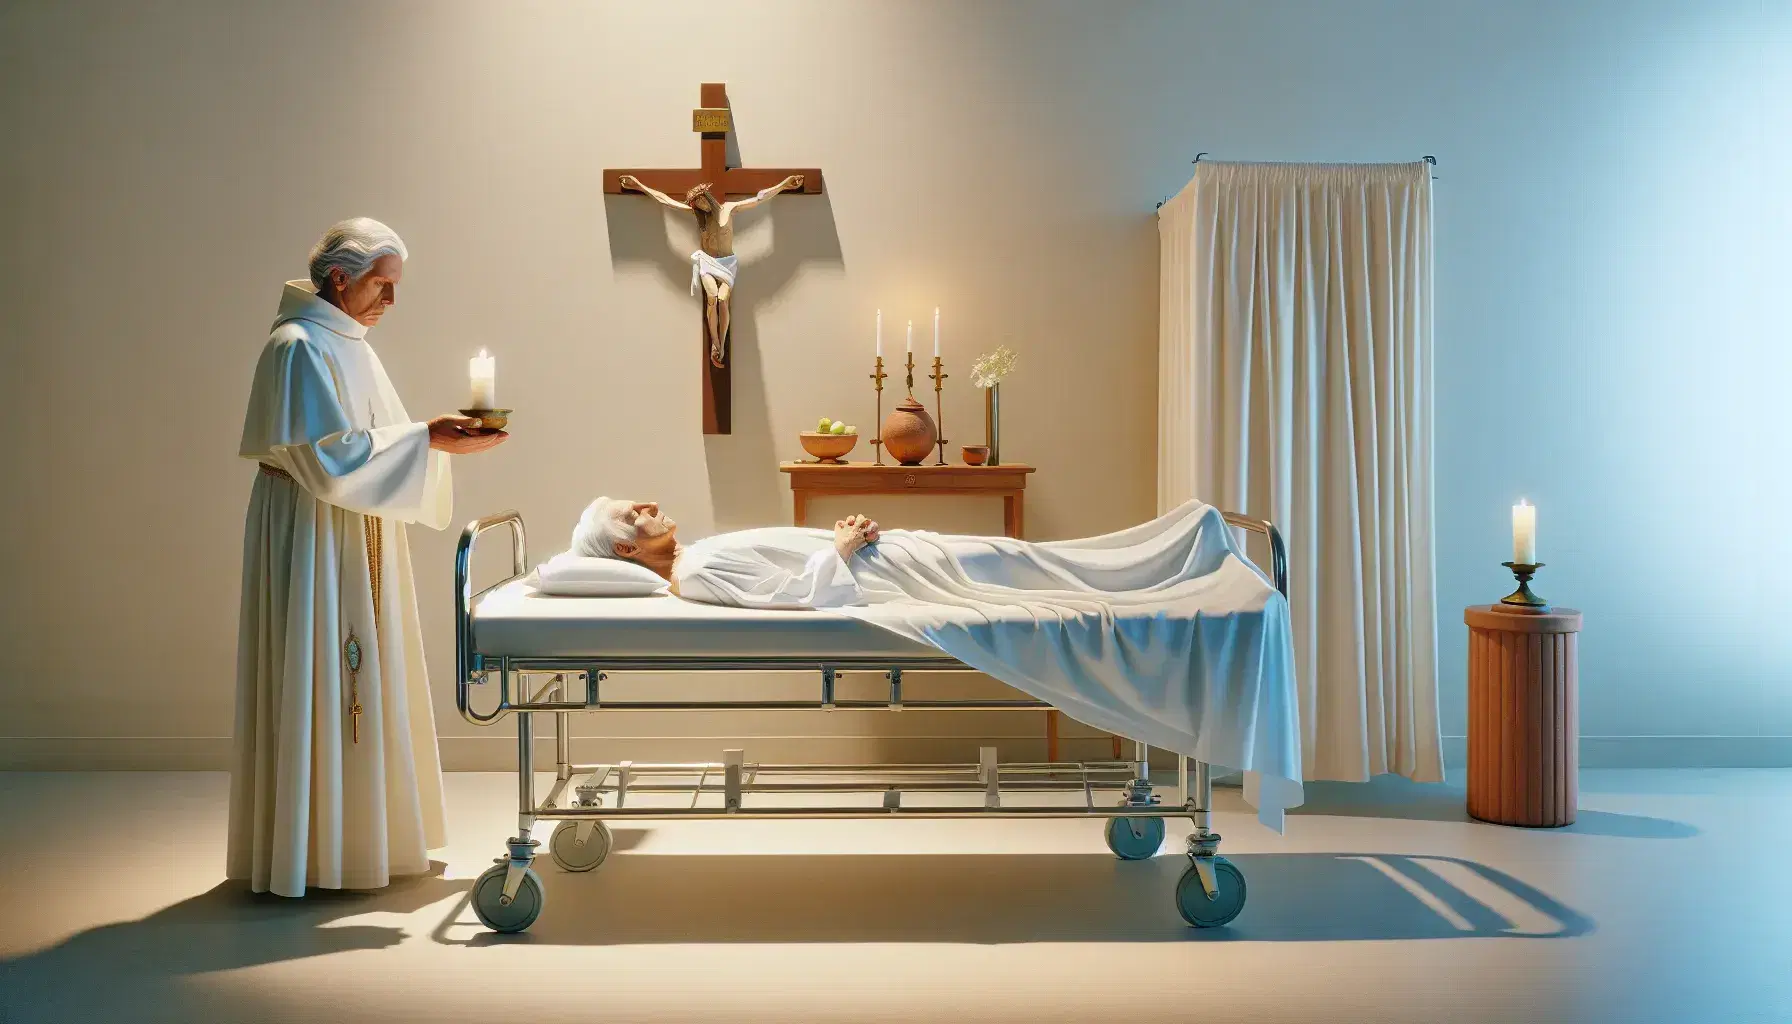 Habitación hospitalaria con paciente anciano en cama y figura en bata blanca con estola púrpura bendiciendo, junto a mesa con crucifijo y vela encendida.